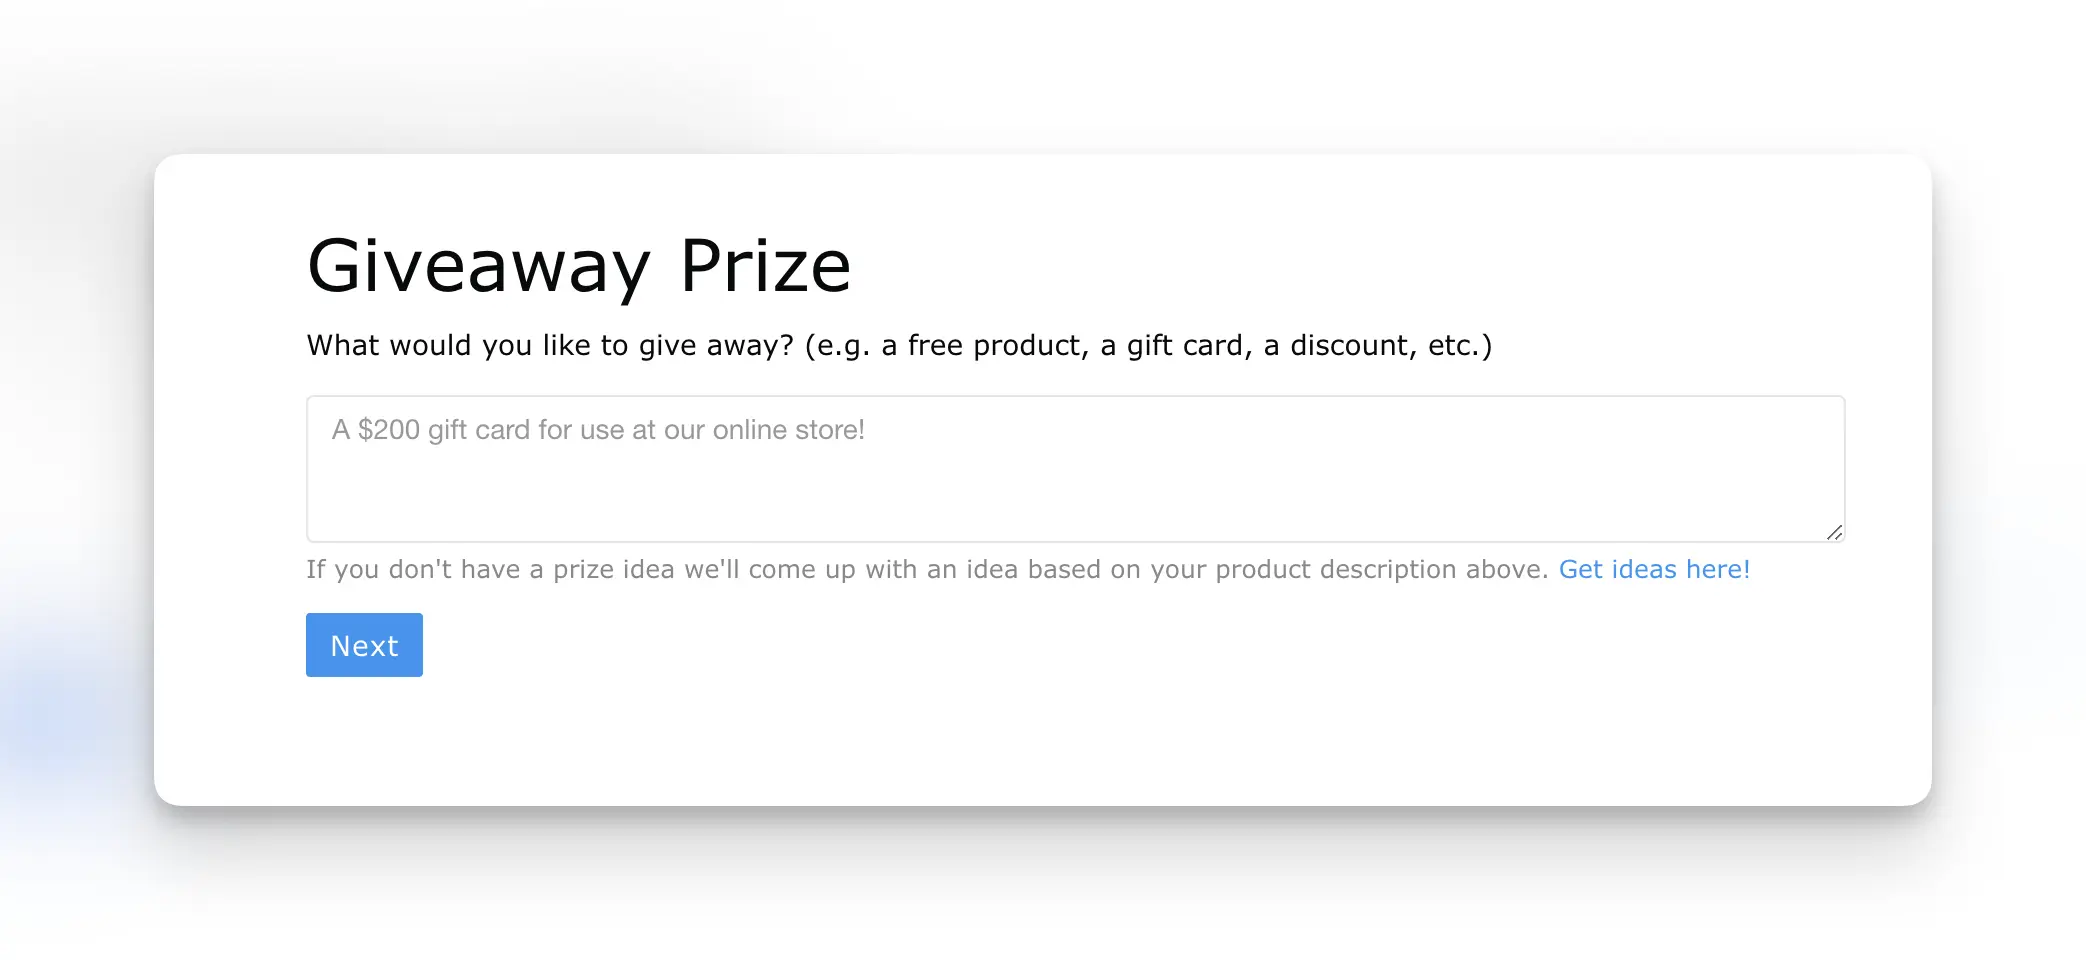 AI giveaway prize idea tool